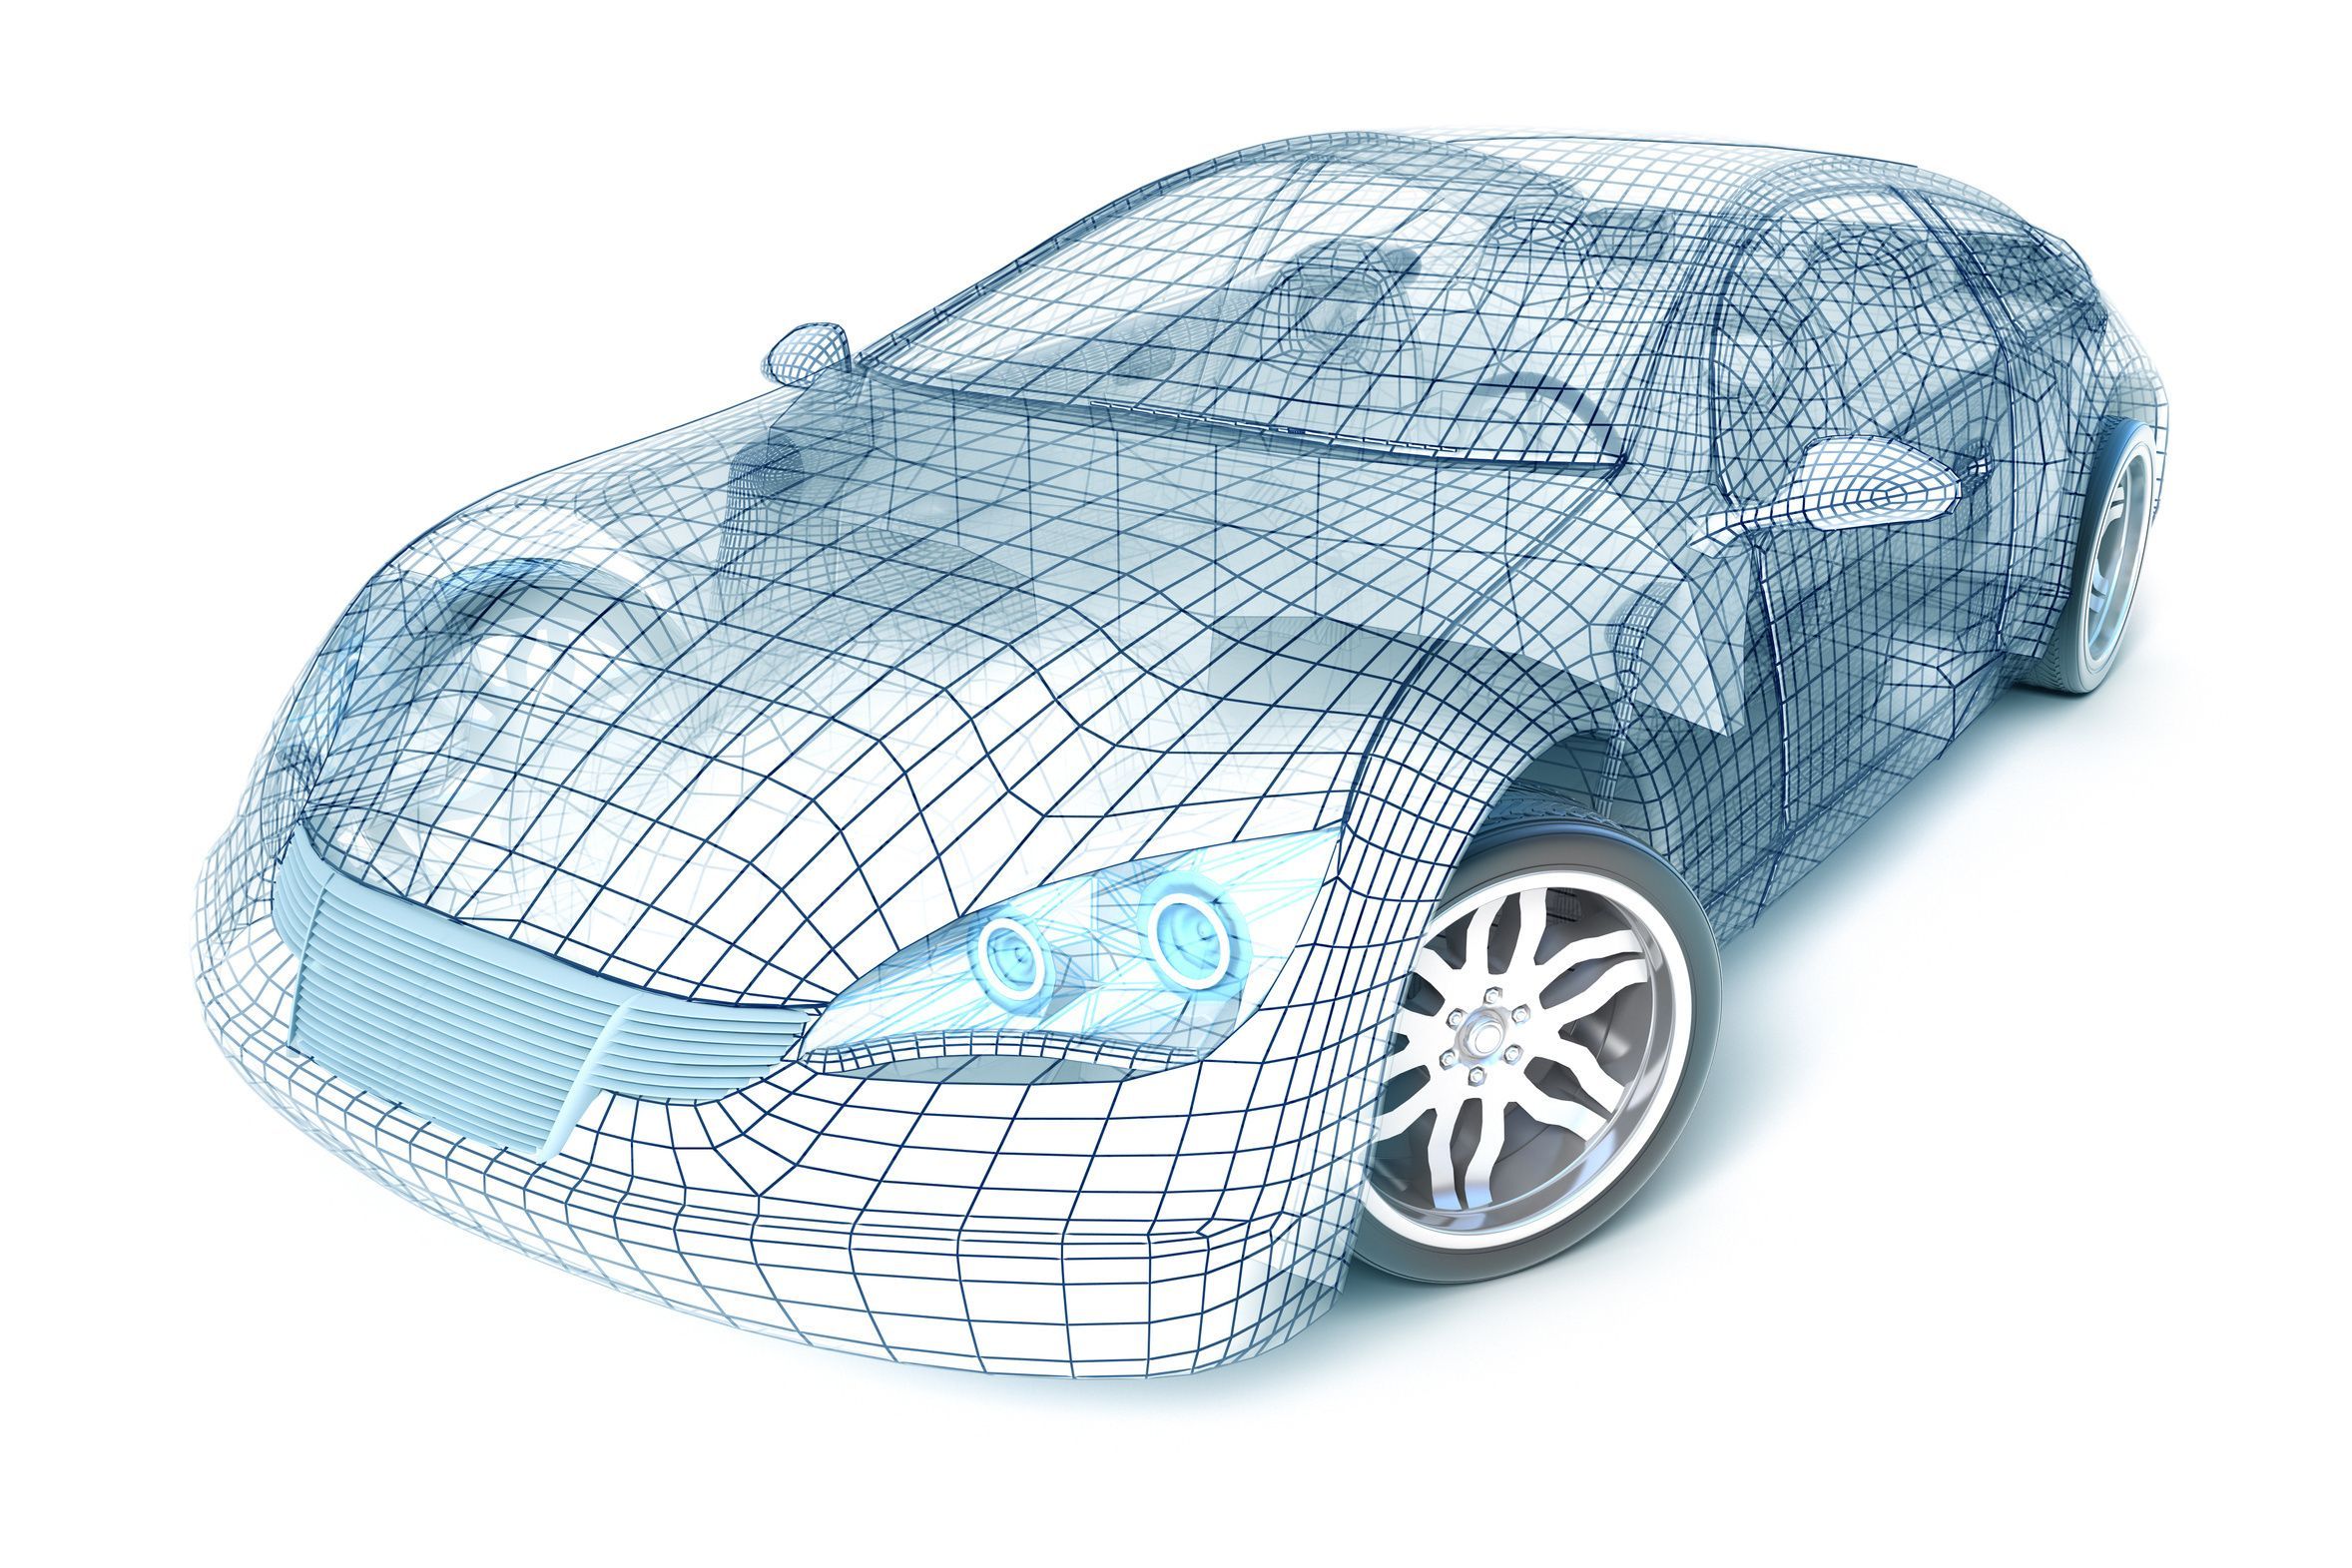 FH JOANNEUM - Automotive Quality Universities - Skizze eines Autos